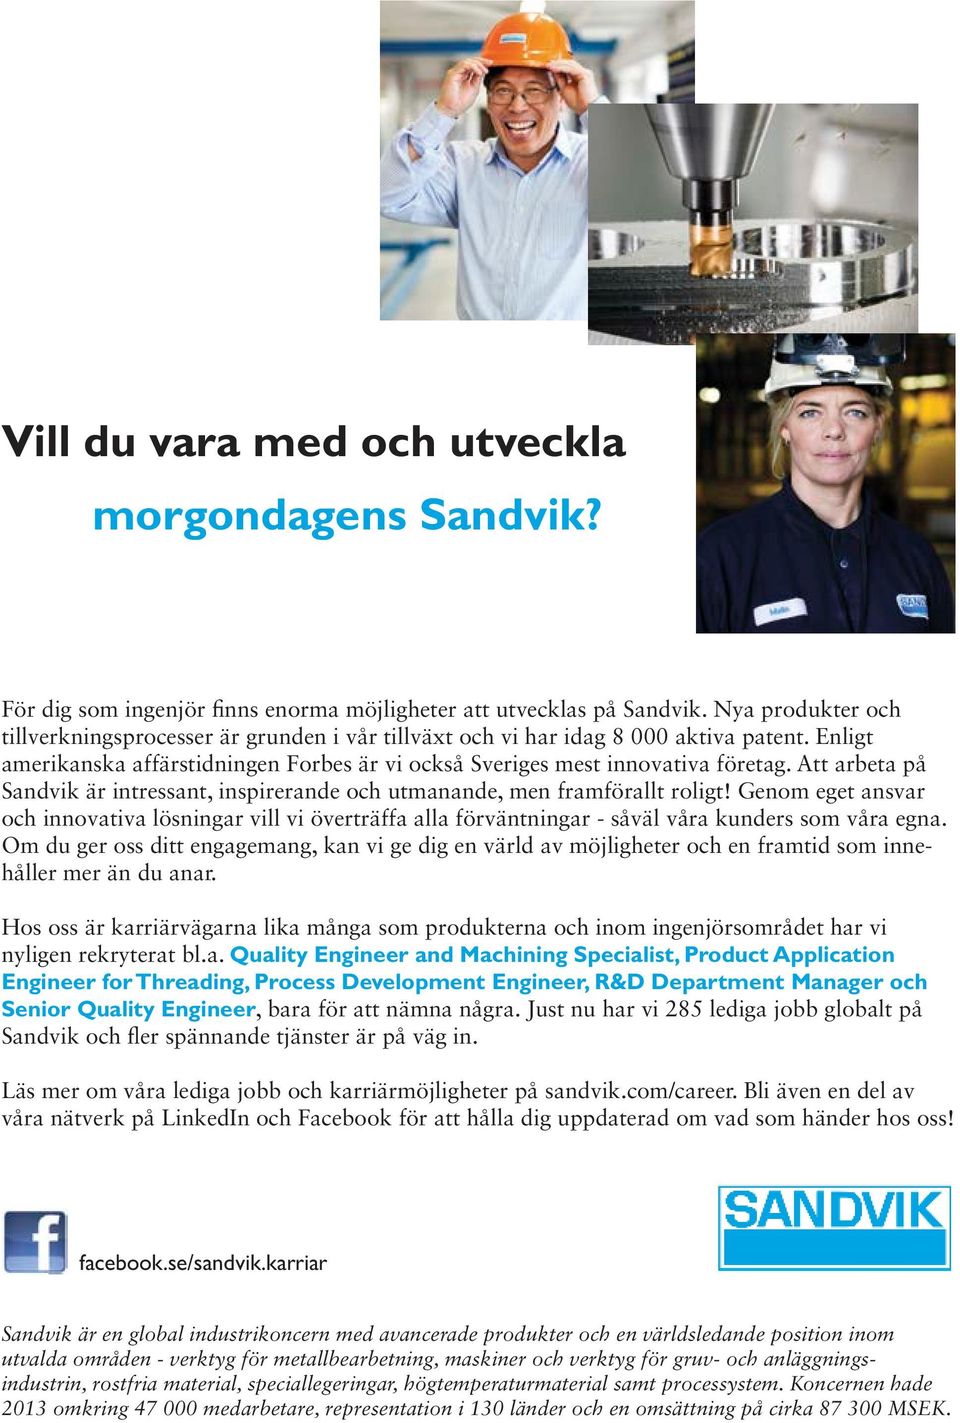 Att arbeta på Sandvik är intressant, inspirerande och utmanande, men framförallt roligt!